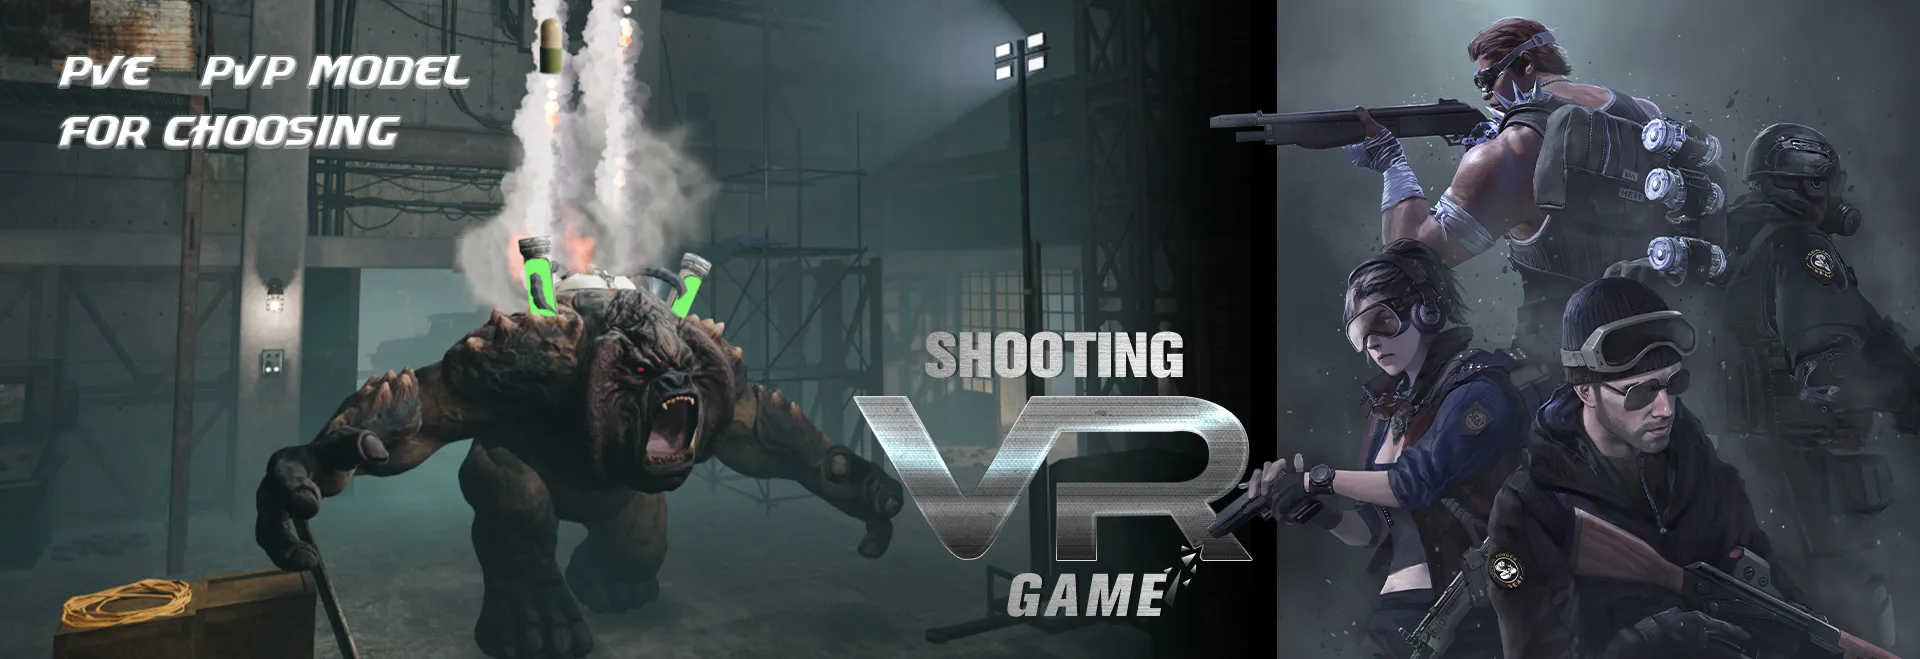 VR 슈팅 게임